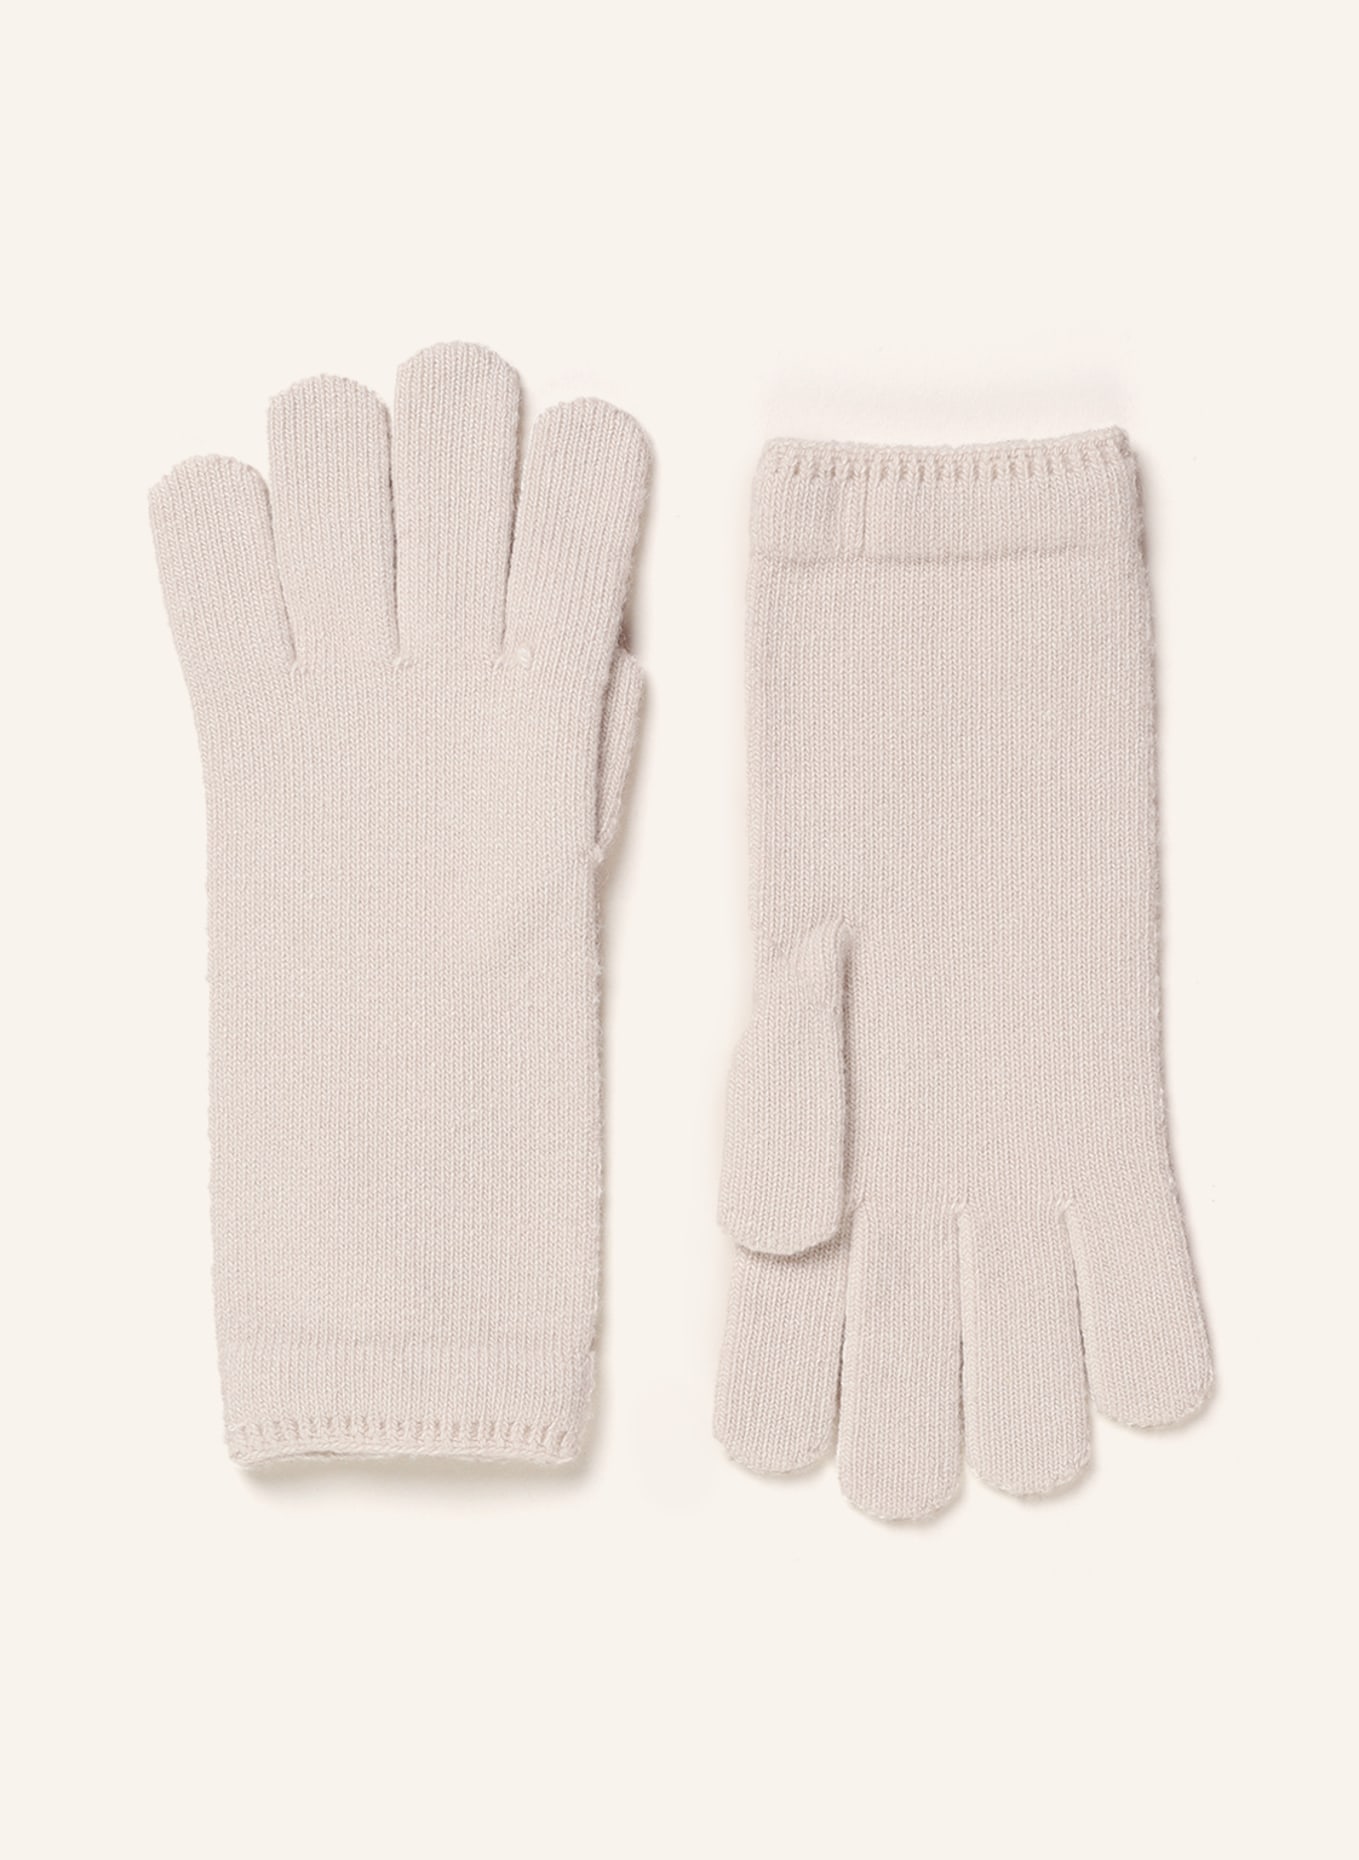 TOMMY HILFIGER Handschuhe, Farbe: CREME (Bild 1)